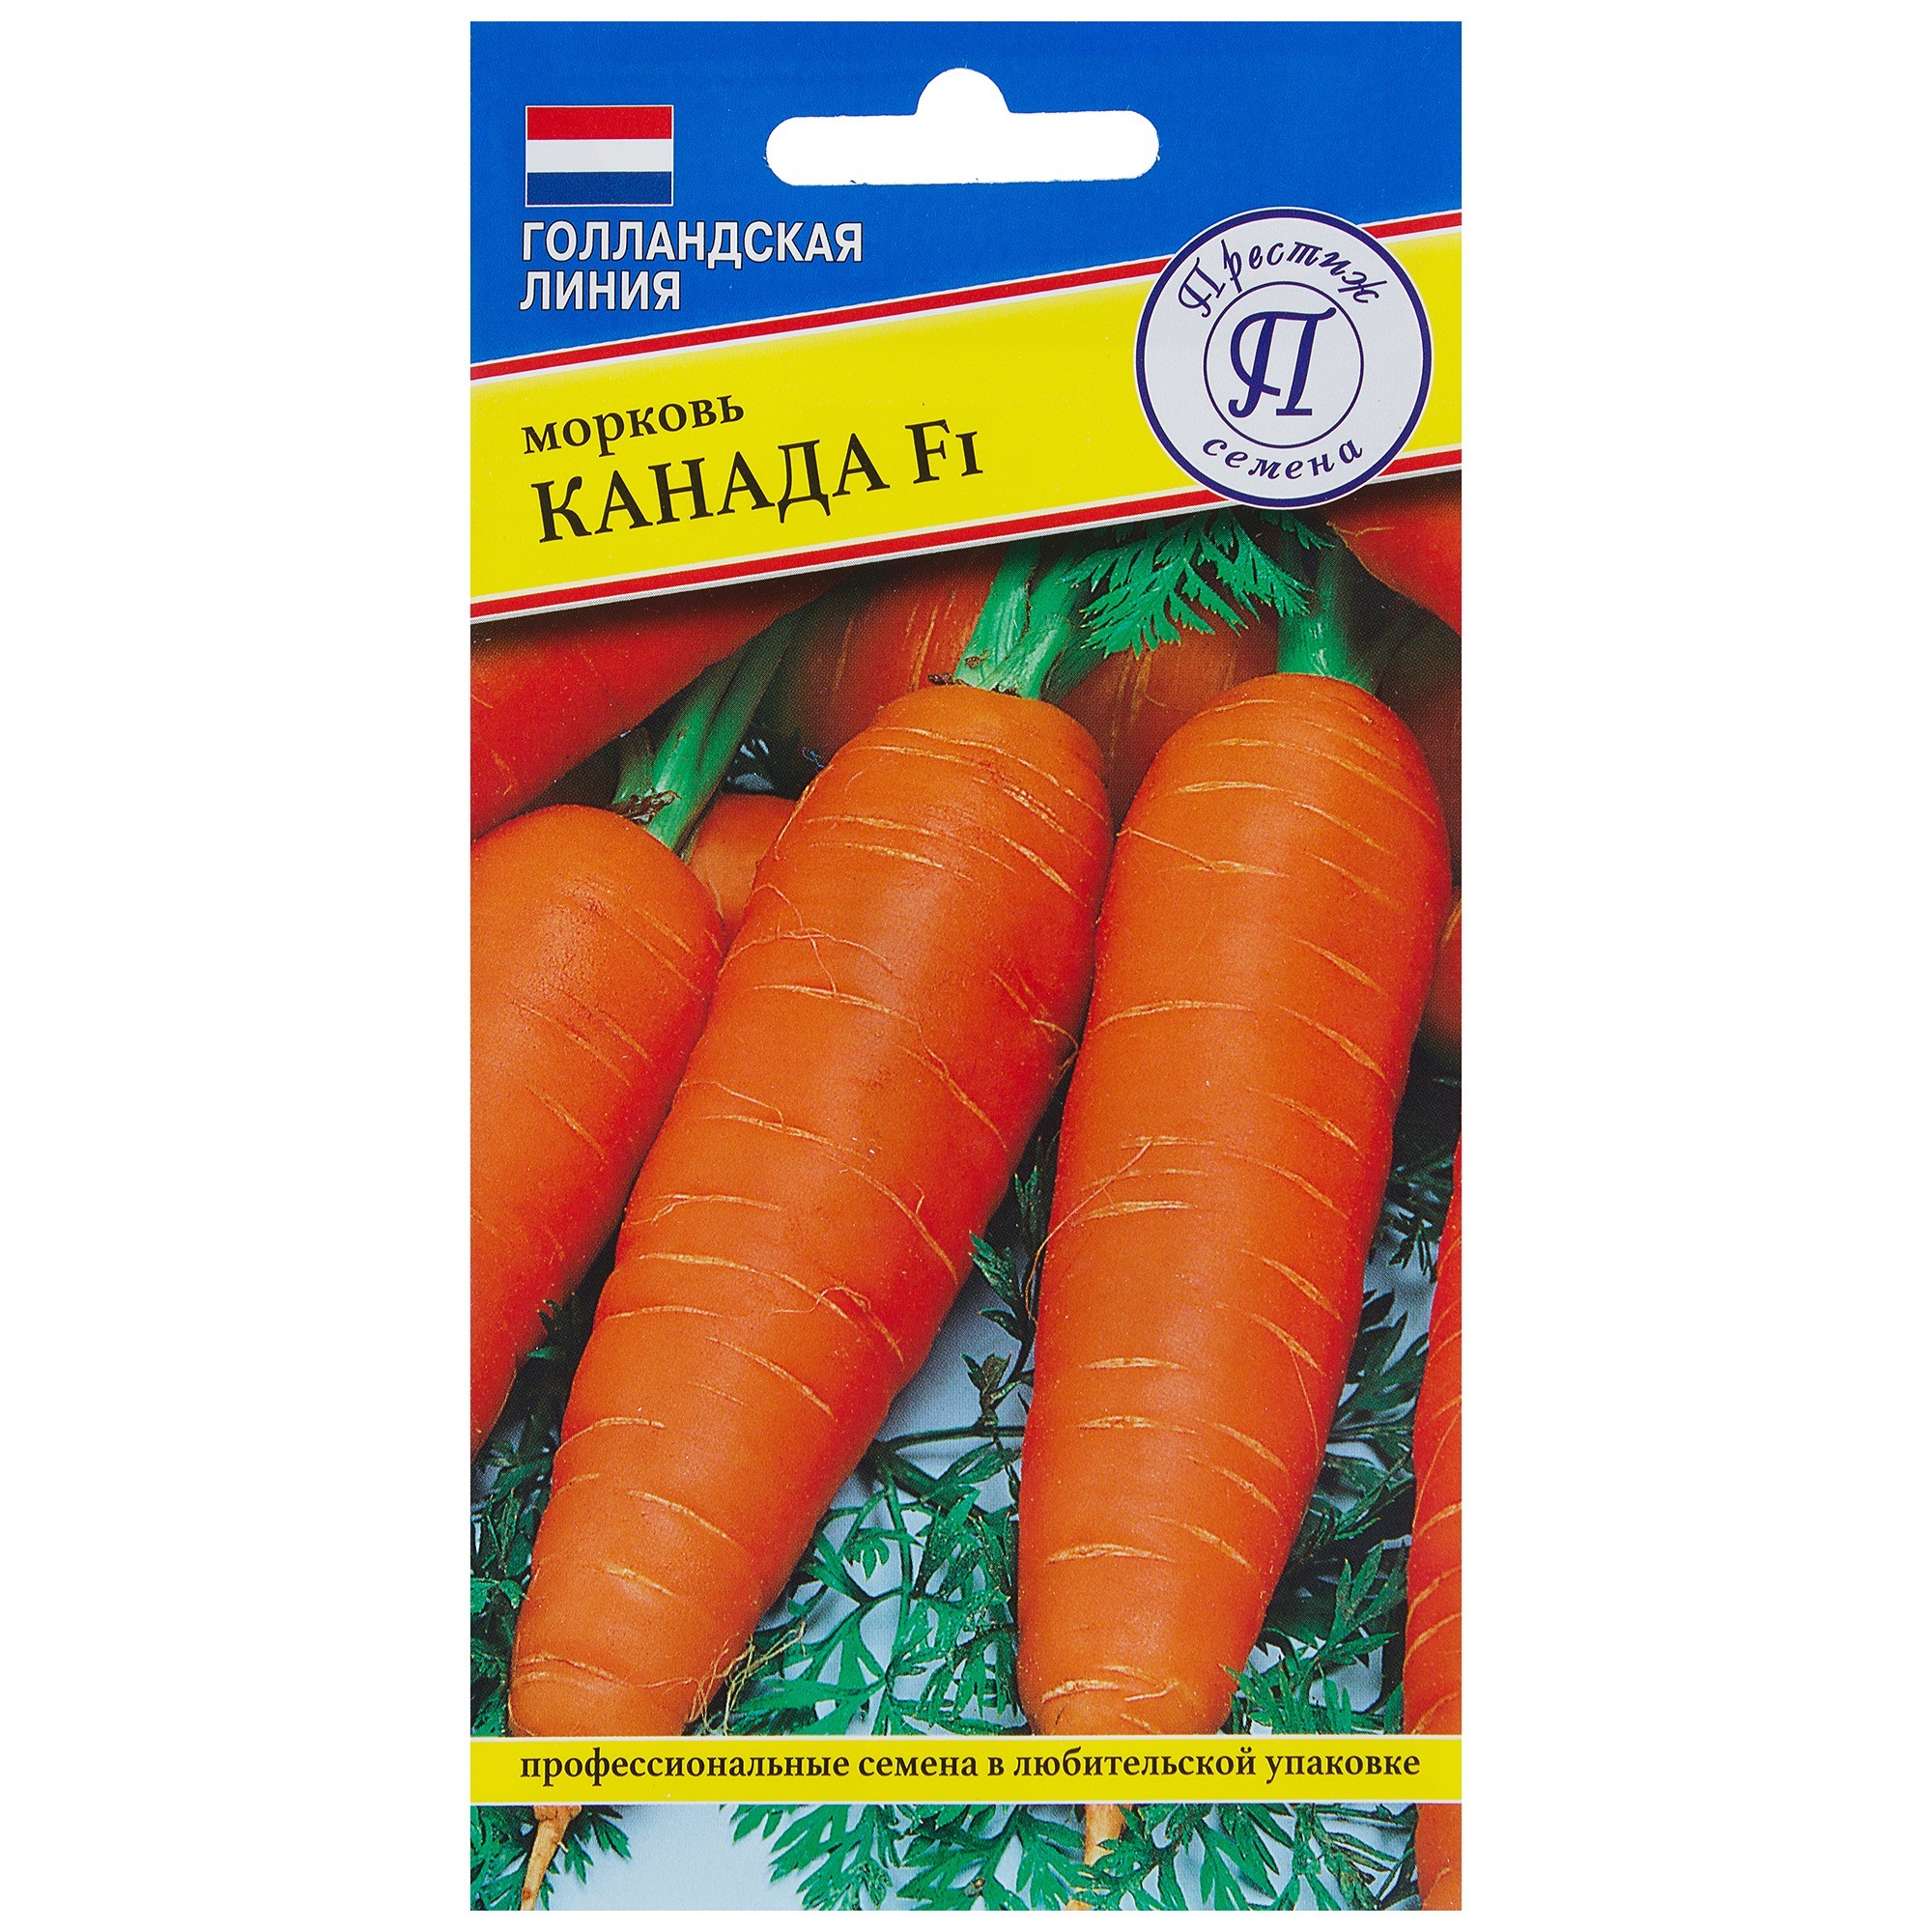 Лучшие семена овощей. Семена. Морковь "Канада f1". Сорт моркови Канада f1. Престиж семена морковь Канада f1. Семена морковь болеро (10 шт.).